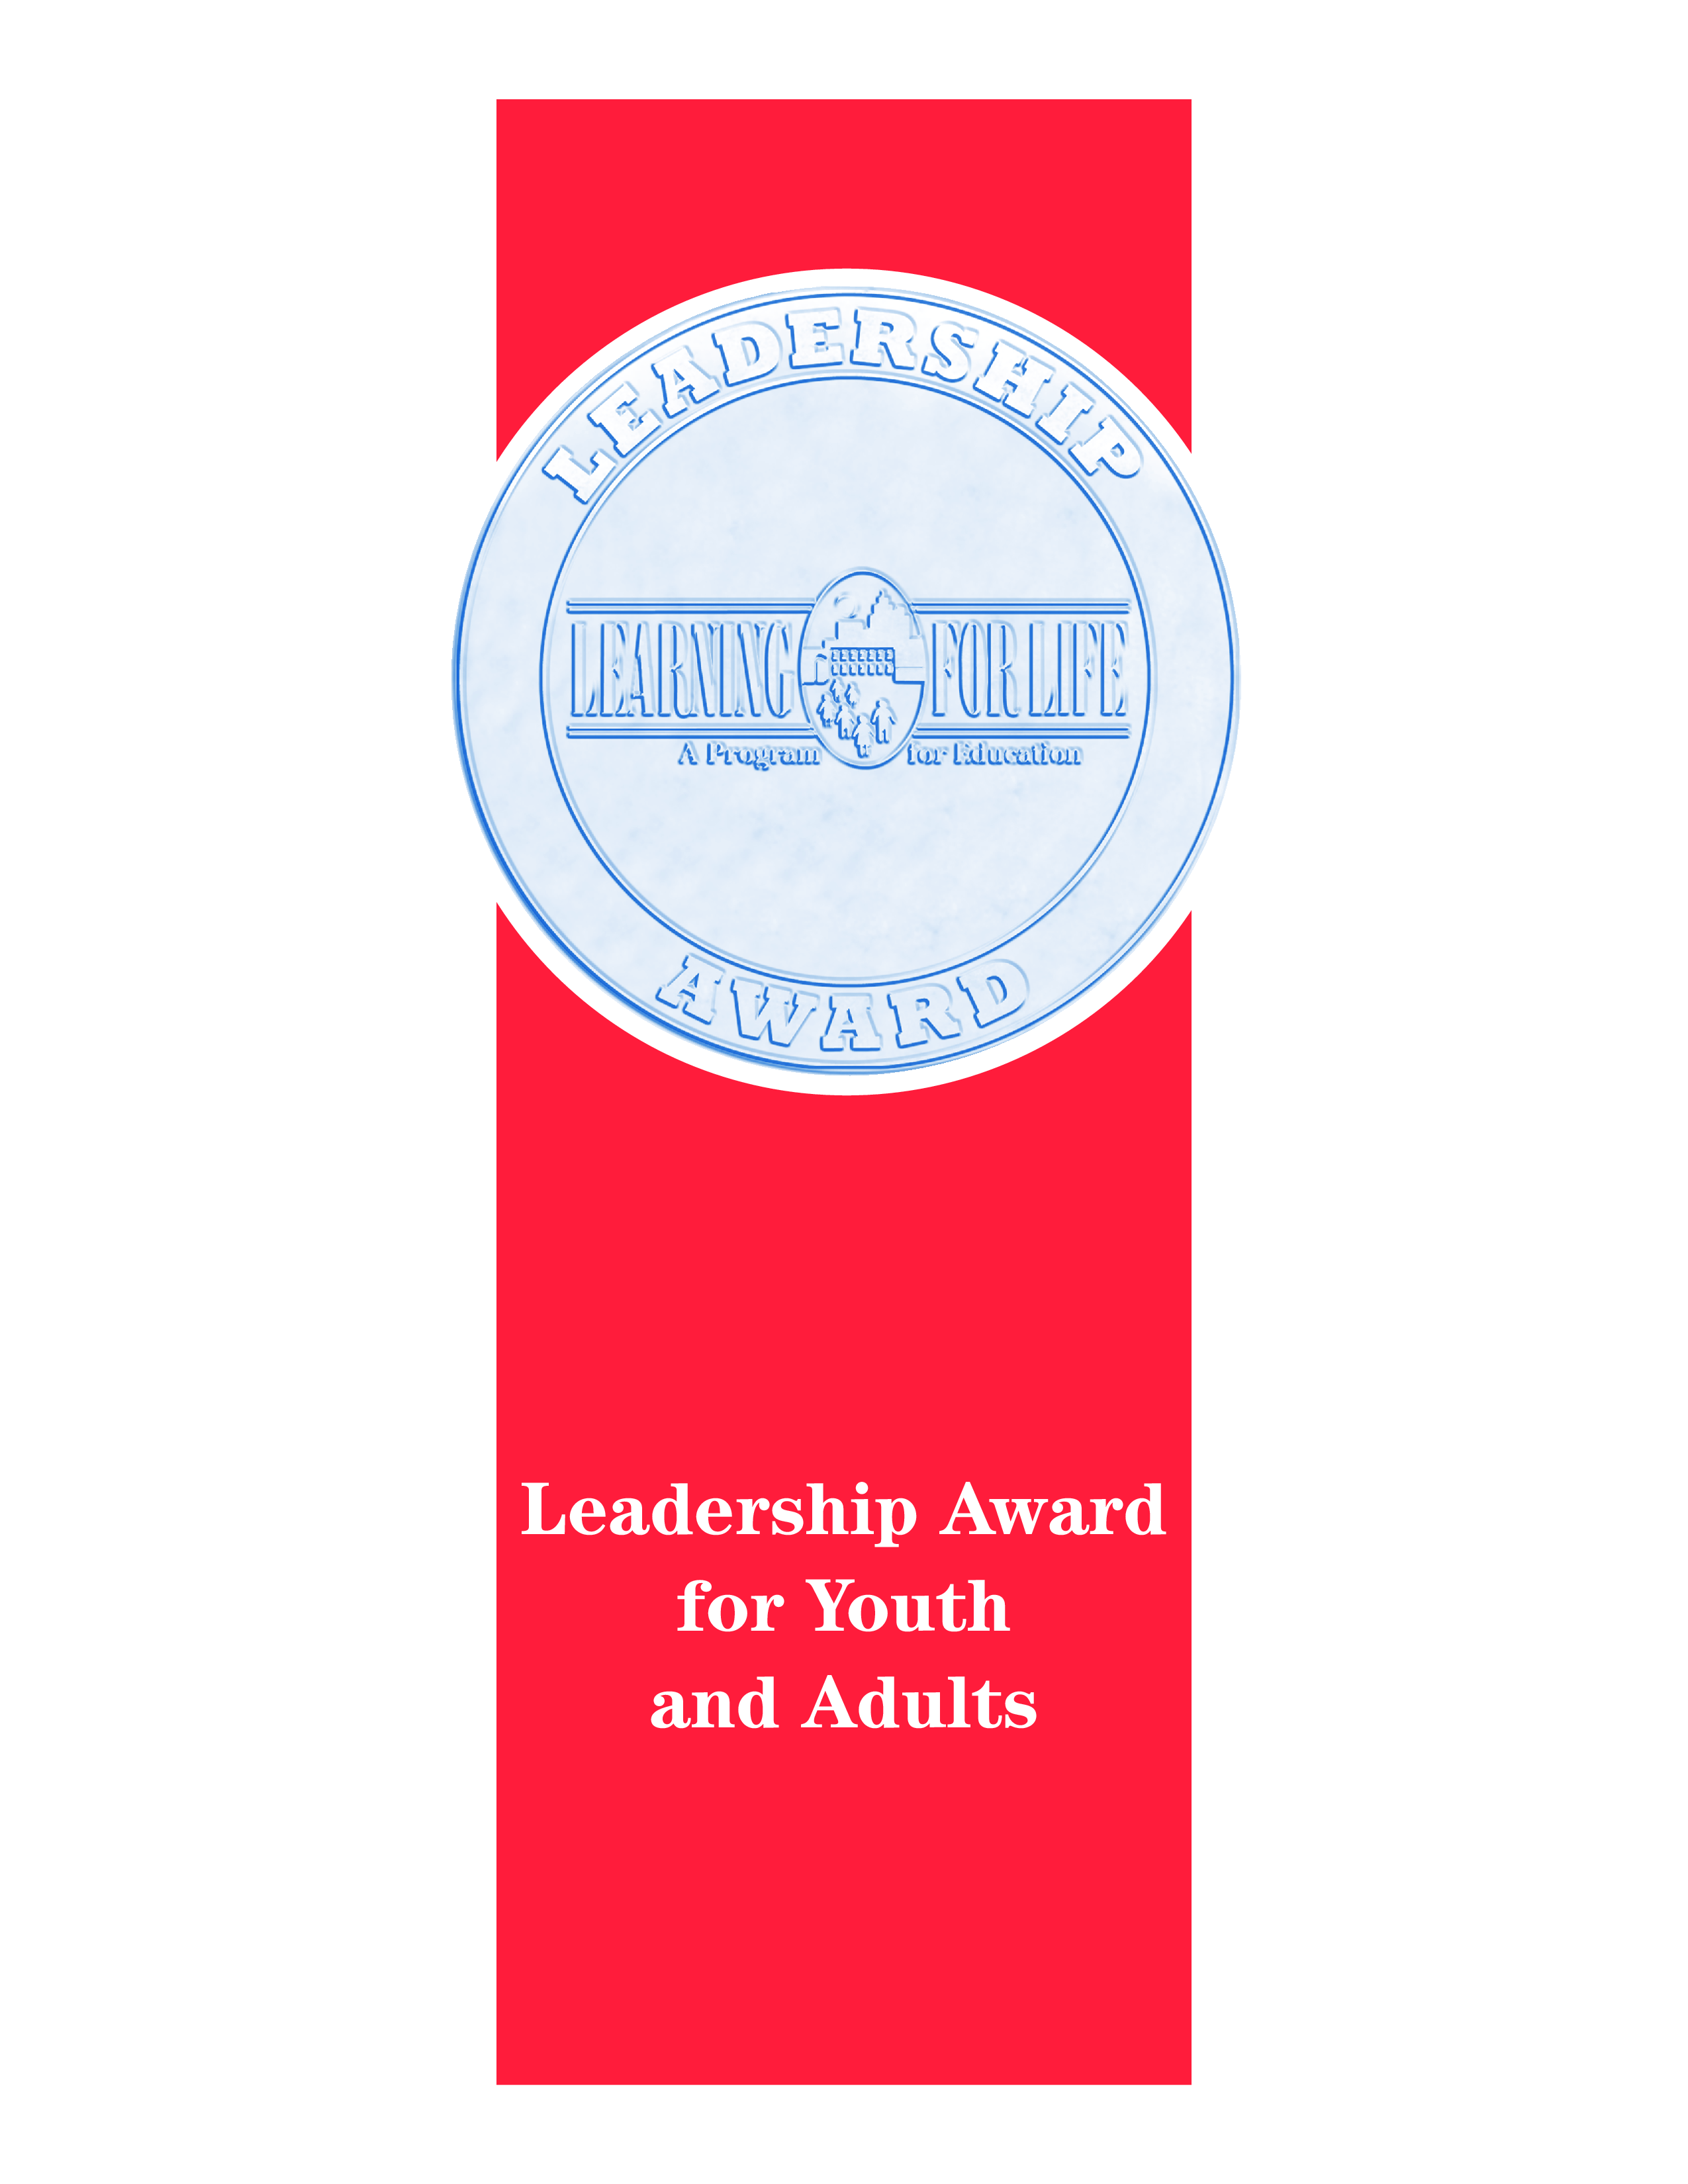 Youth Leadership Award  Templates at allbusinesstemplates.com In Leadership Award Certificate Template